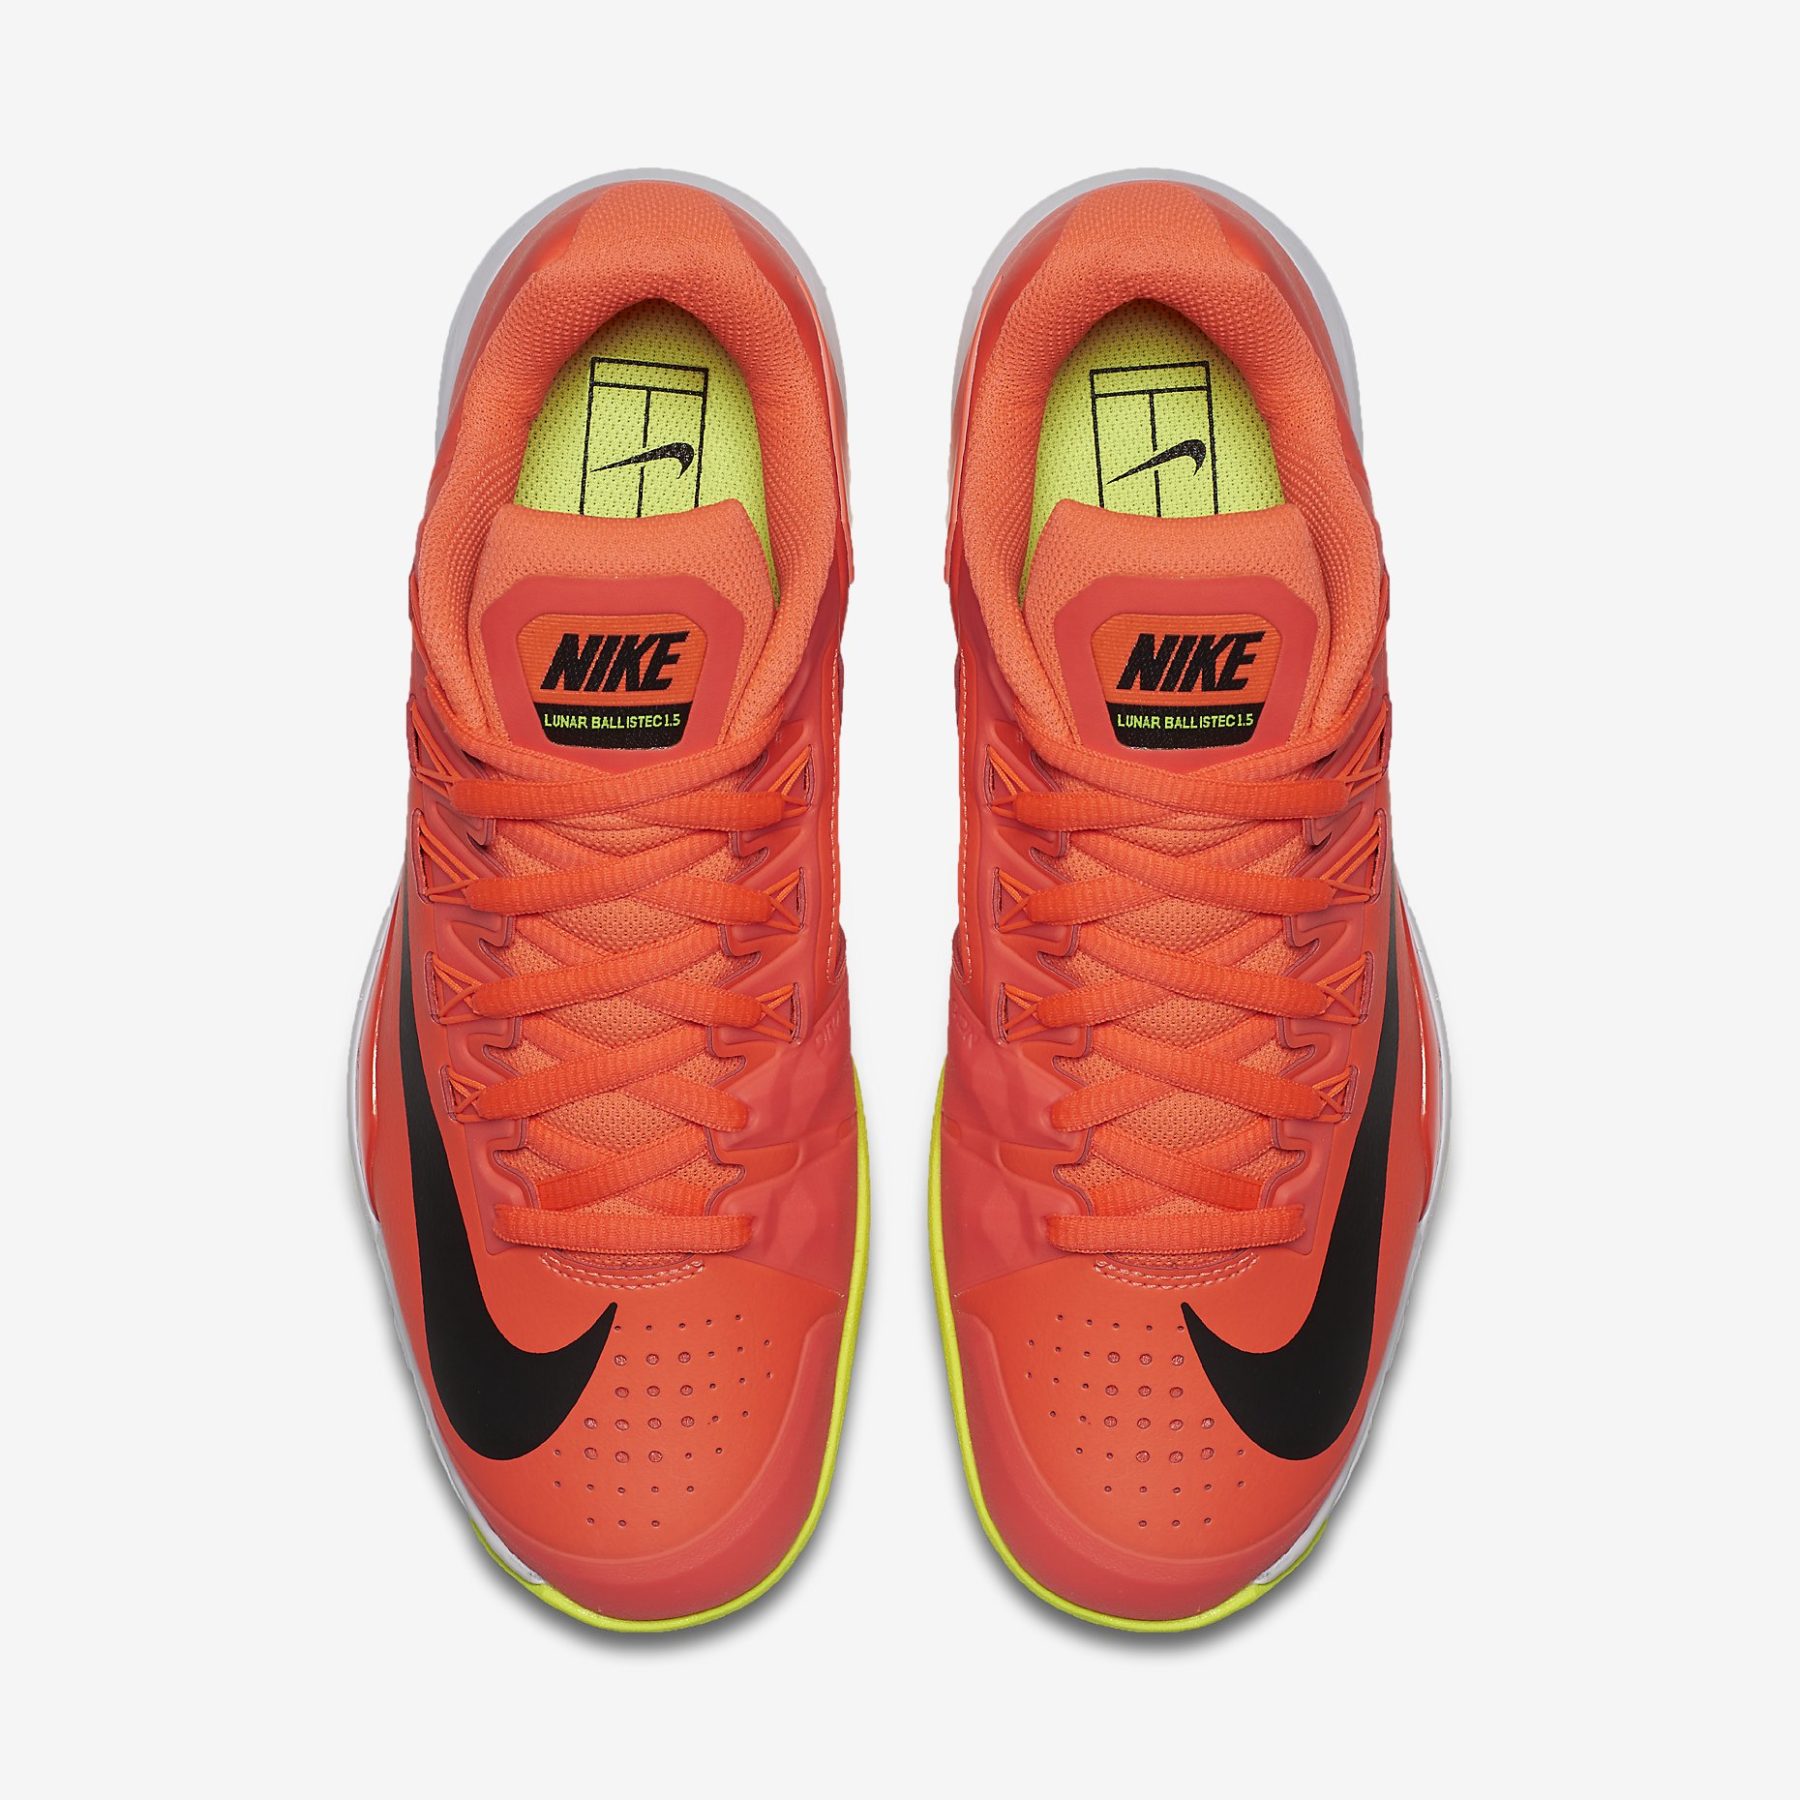 Pelágico Contrato adecuado Nike, las zapatillas más deseadas gracias a Federer y Nadal • Vayalujo